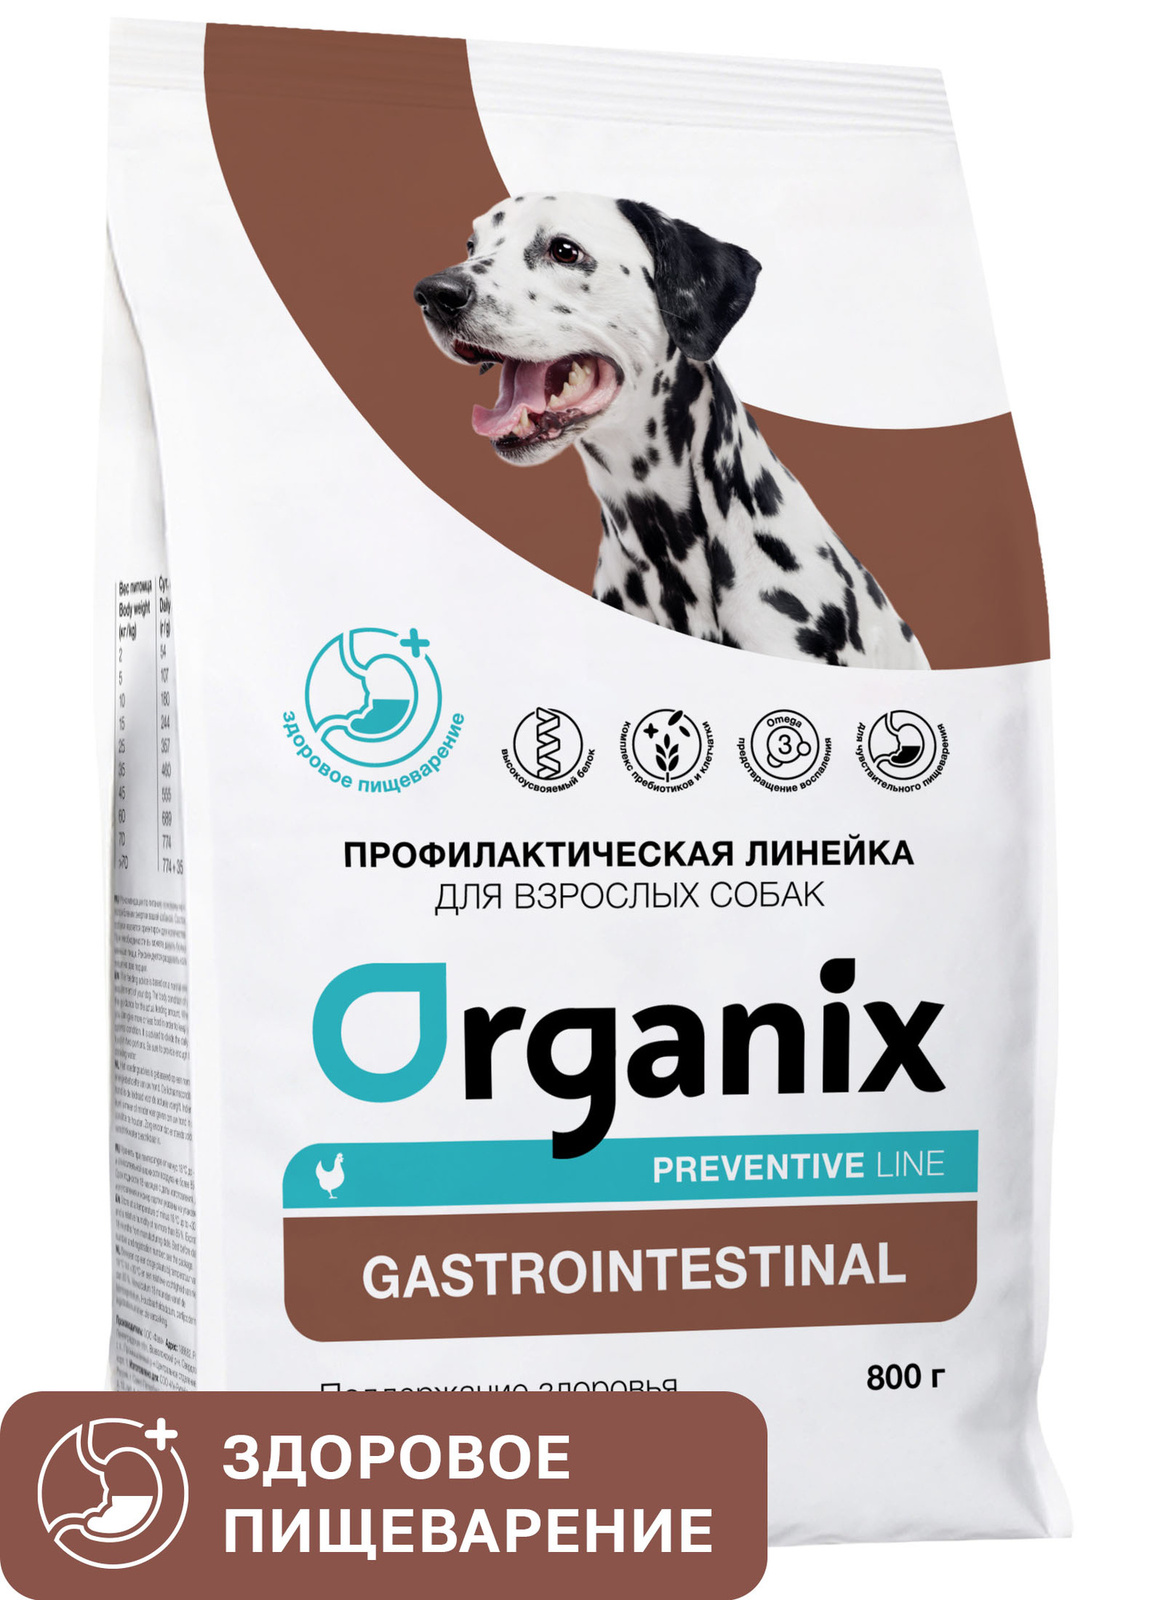 Organix Preventive Line Organix Preventive Line gastrointestinal сухой корм для собак Поддержание здоровья пищеварительной системы (2,5 кг)